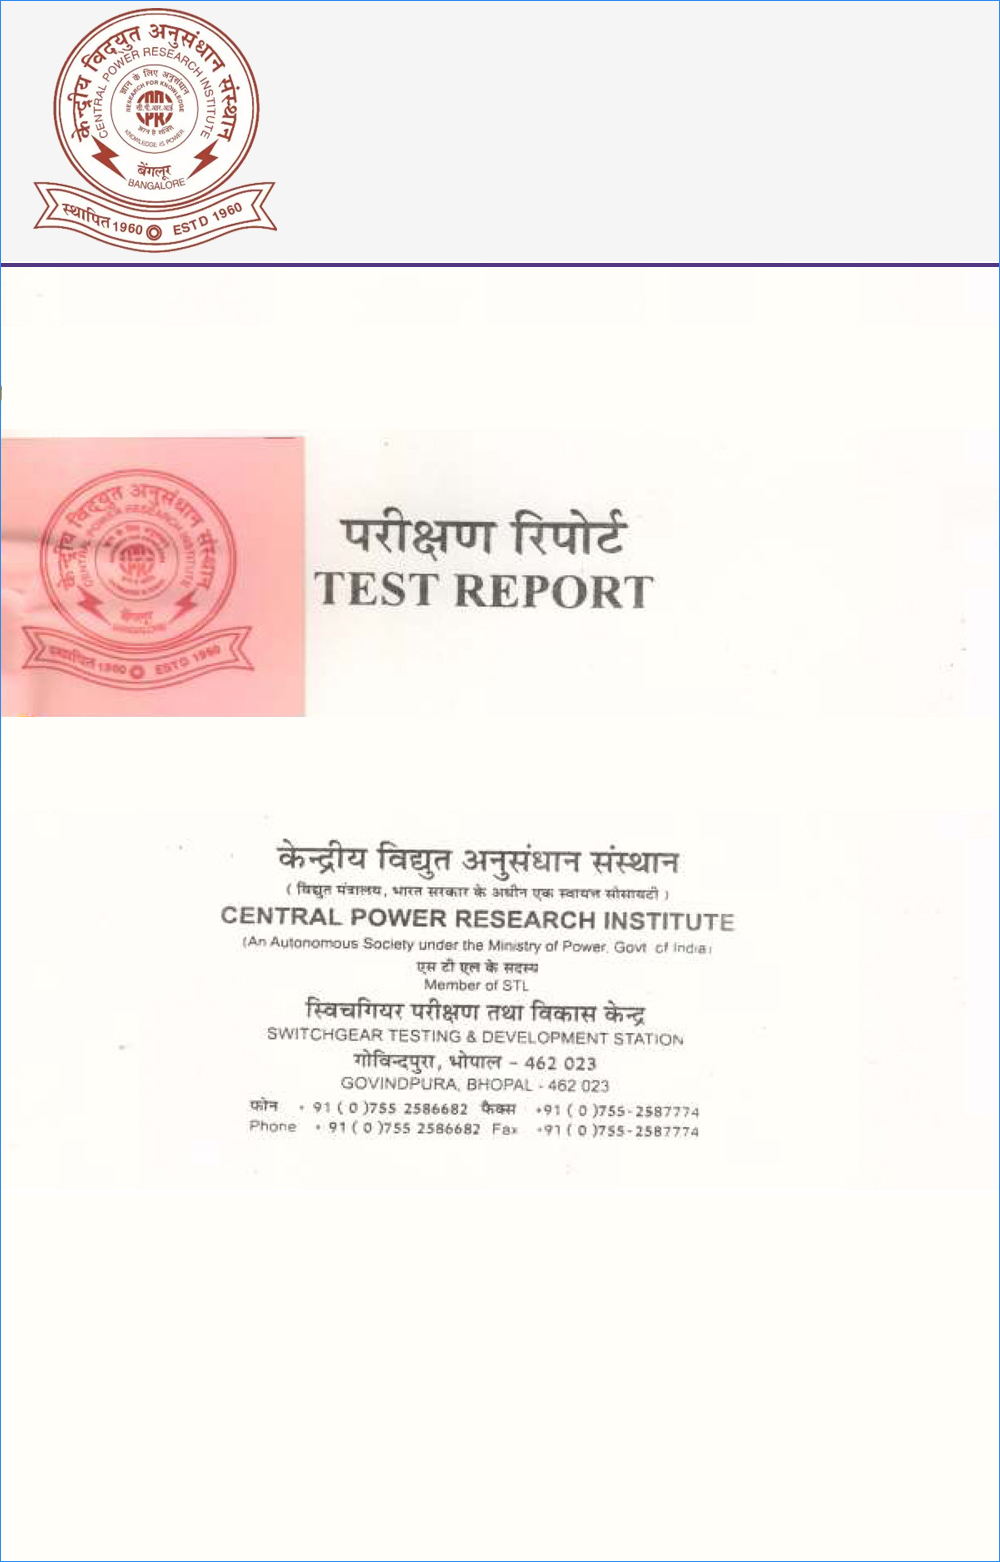 cpri-test-certificate